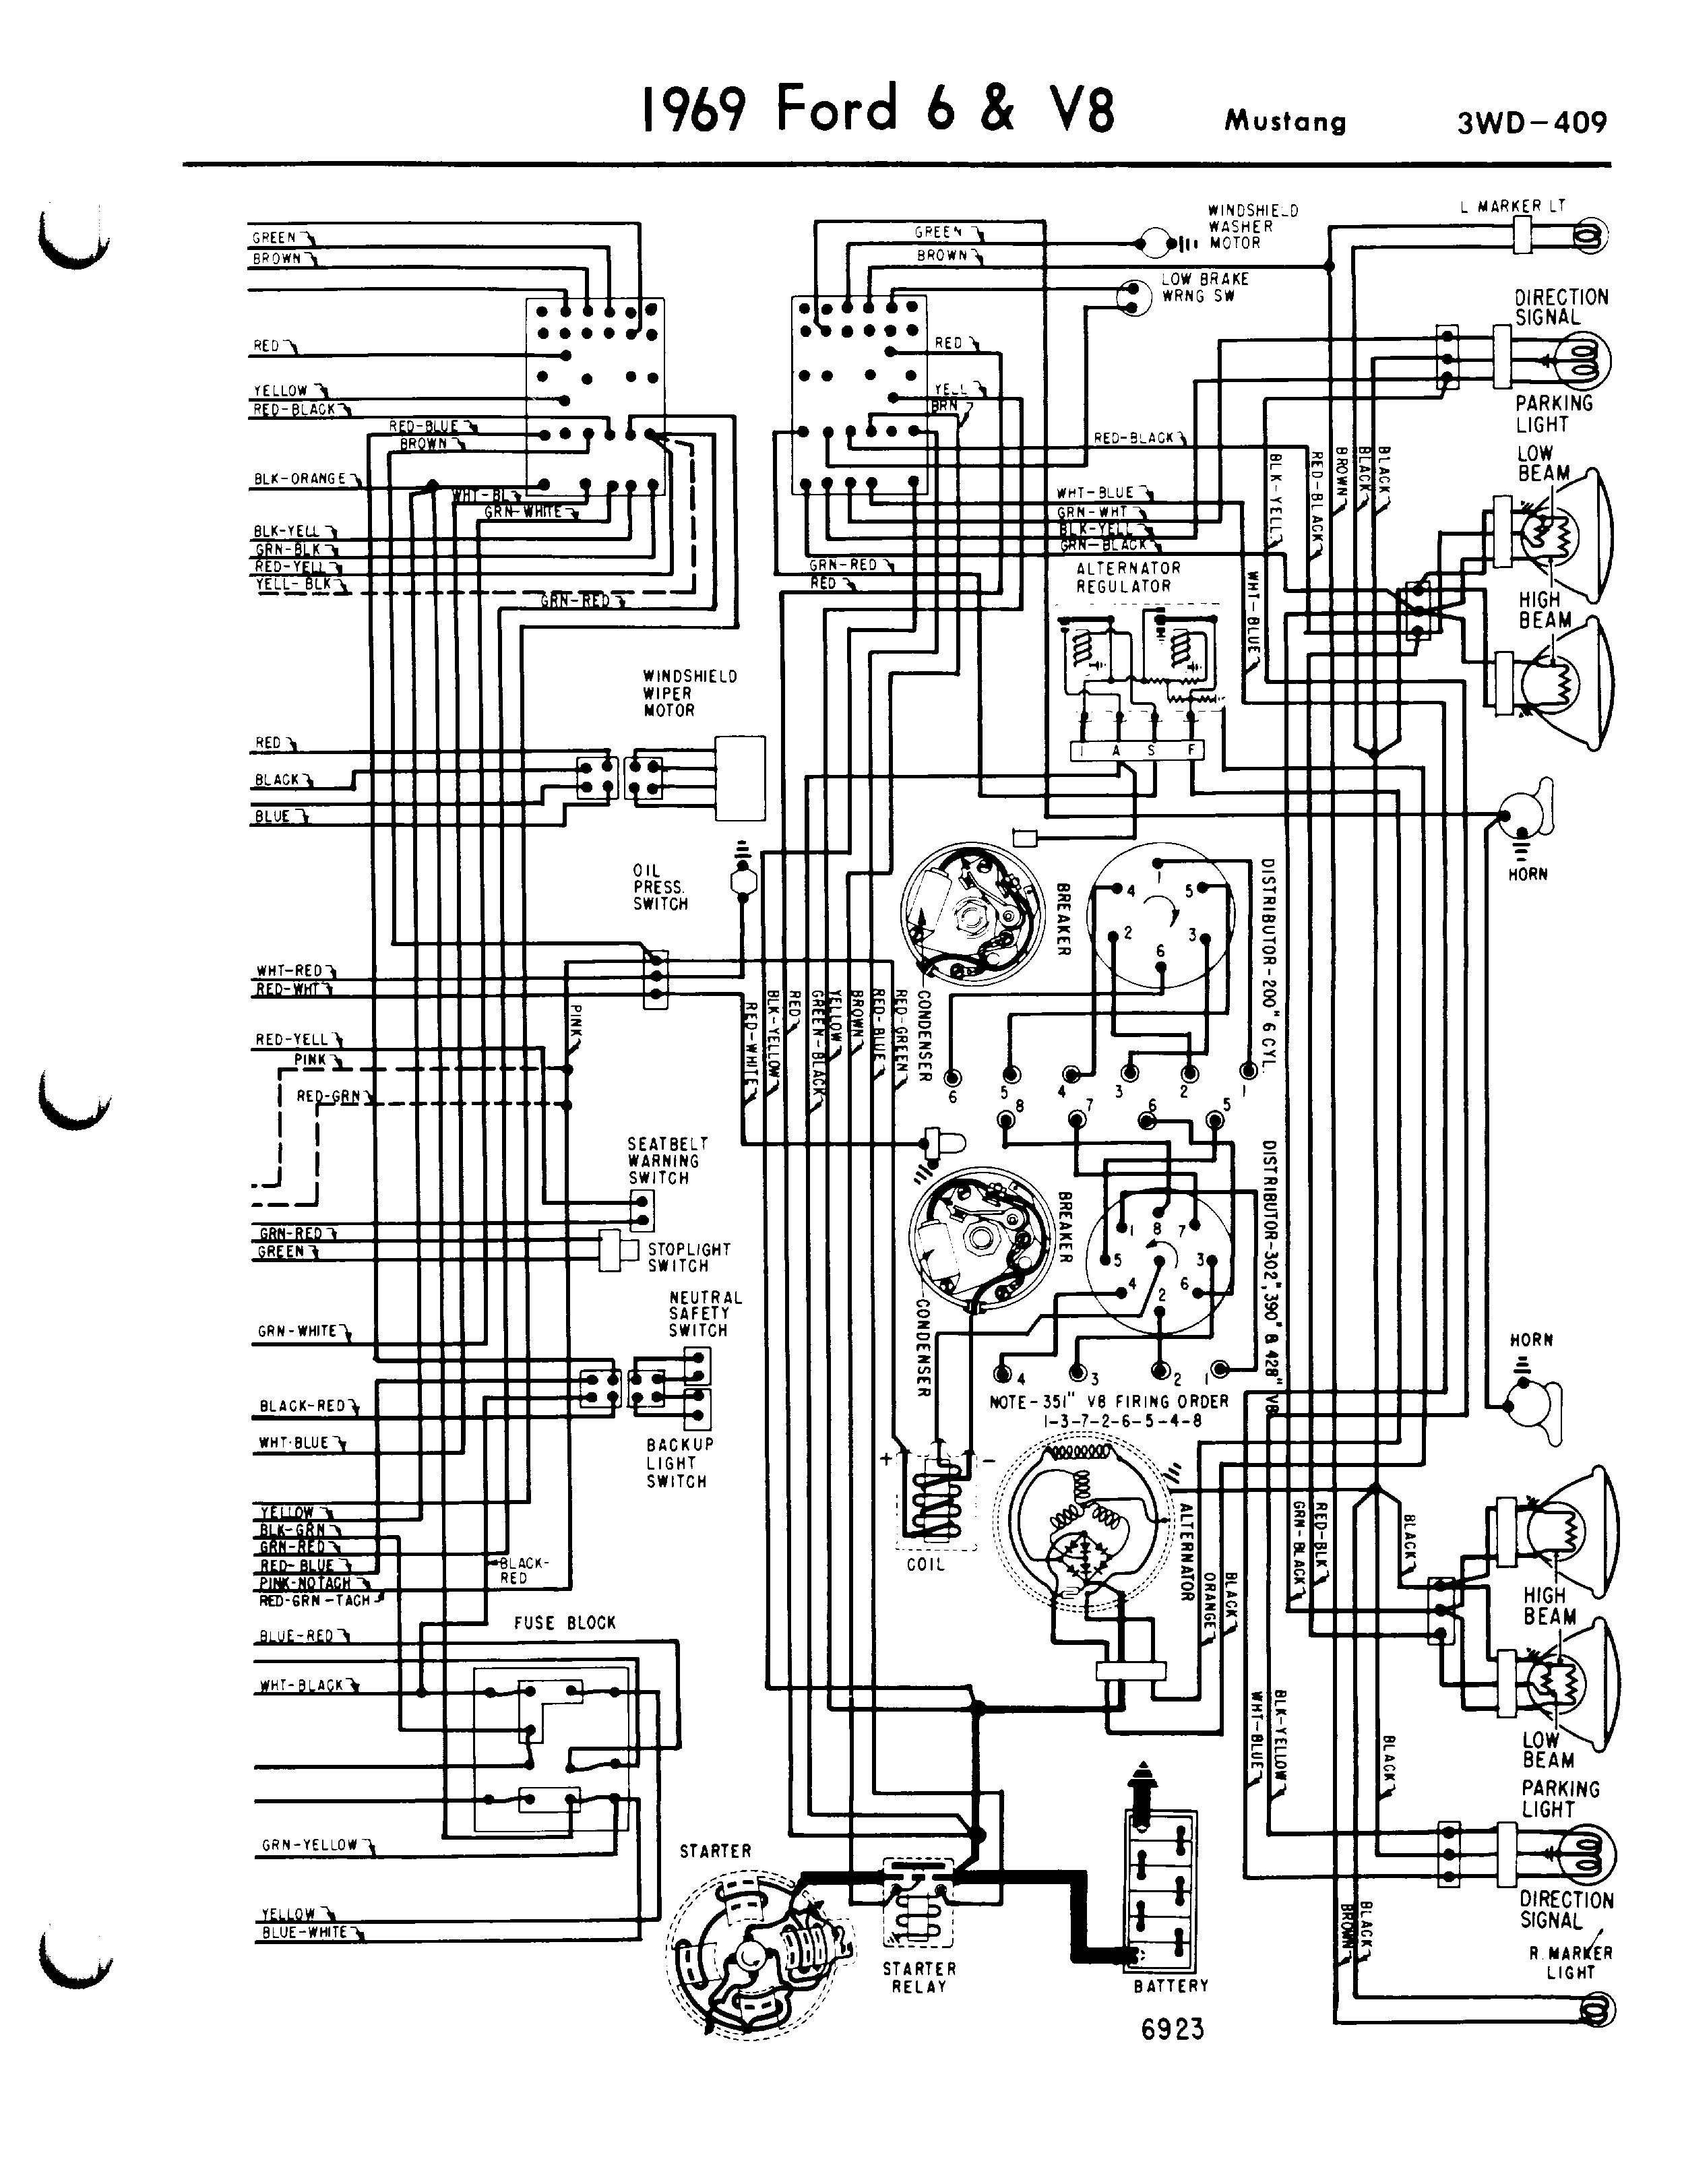 1968 Mustang Engine Wiring Diagram Mustang Wiring Diagram ford Mustang Alternator Wiring Diagram 2007